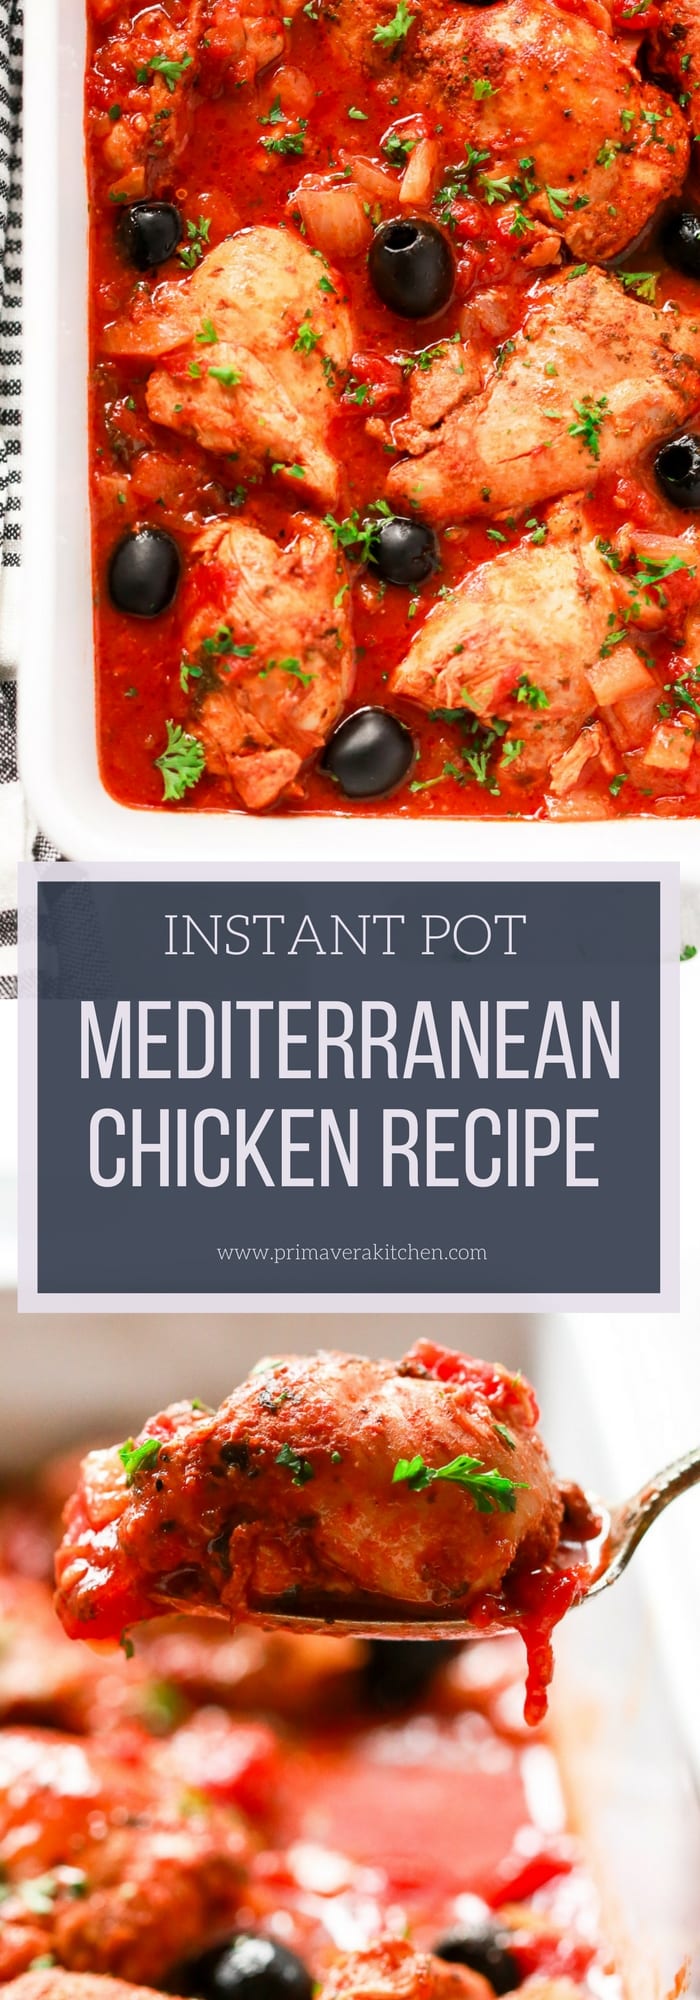 Instant Pot Mediterranean Chicken Recipe - Primavera Kitchen